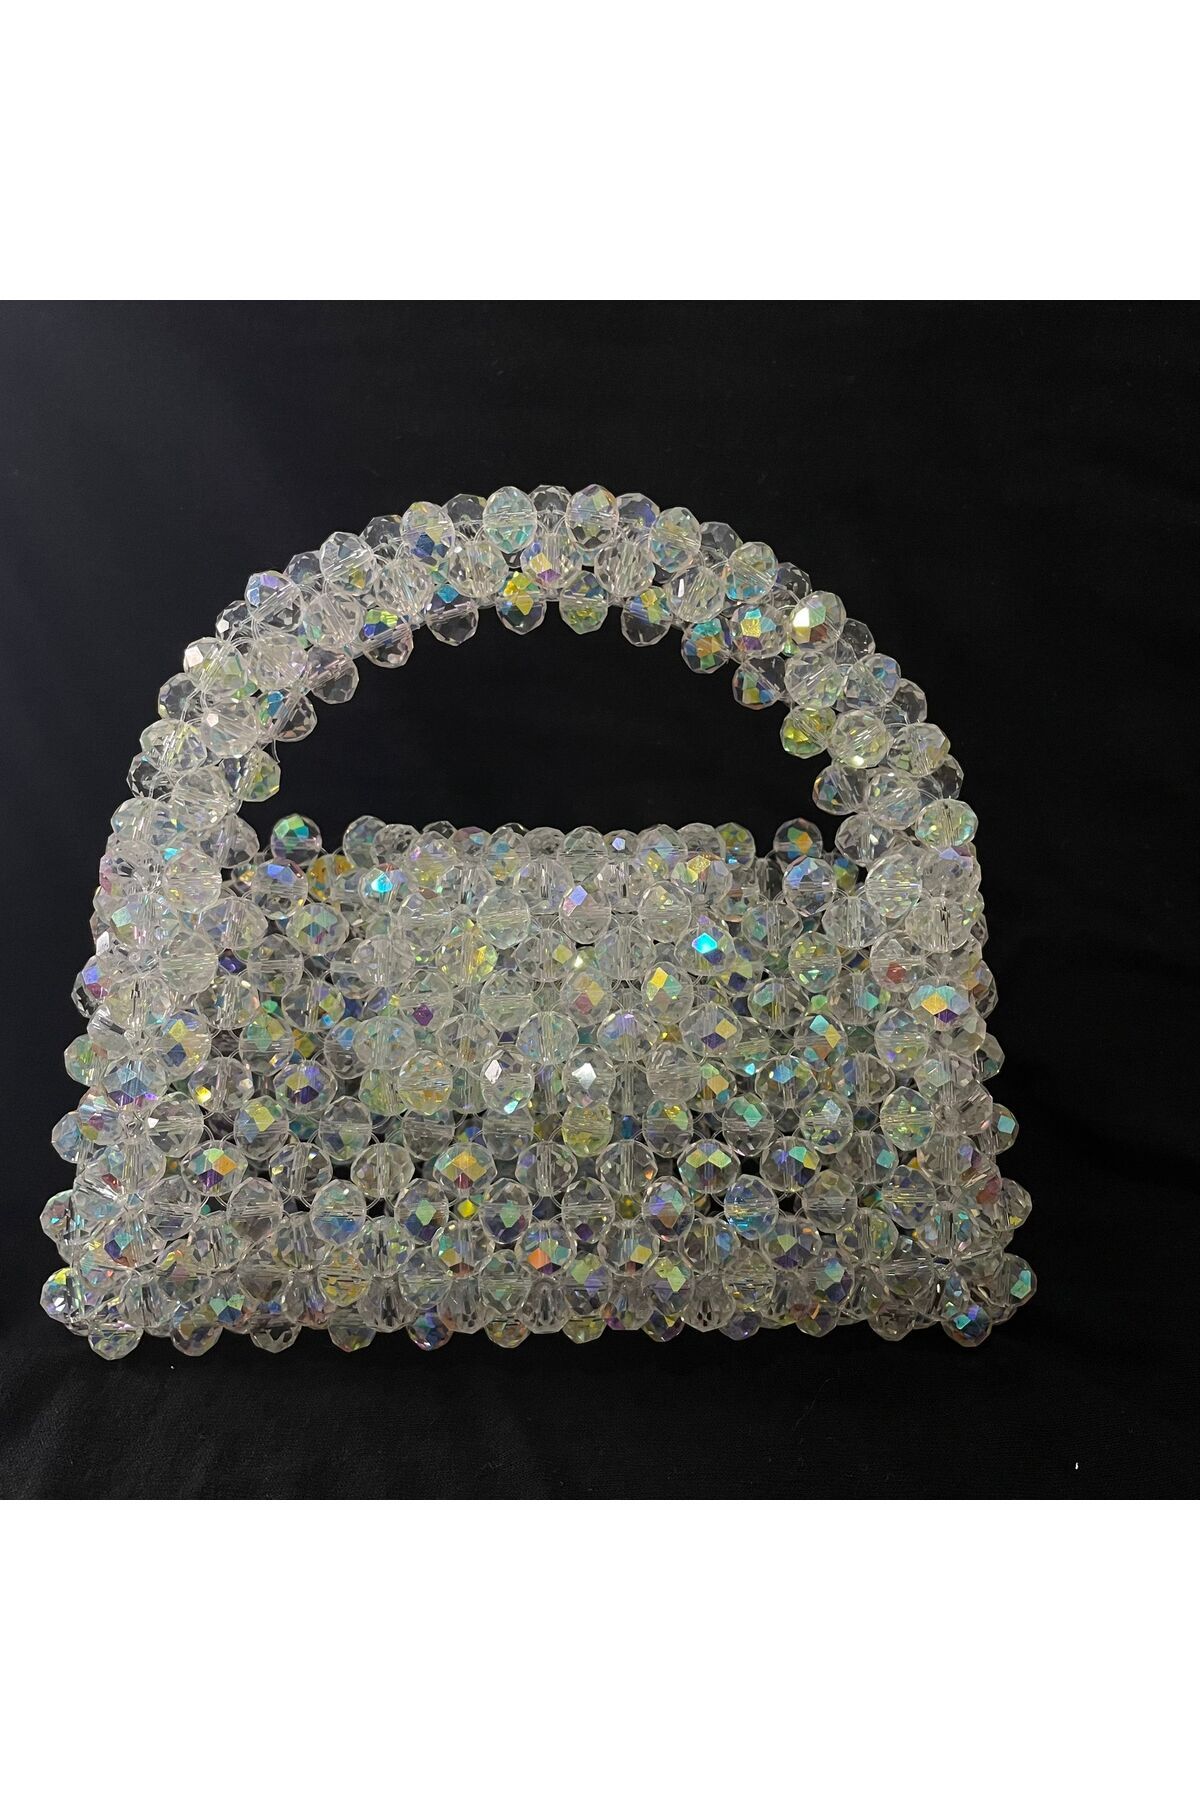 sirius art design gerçek kristal çanta